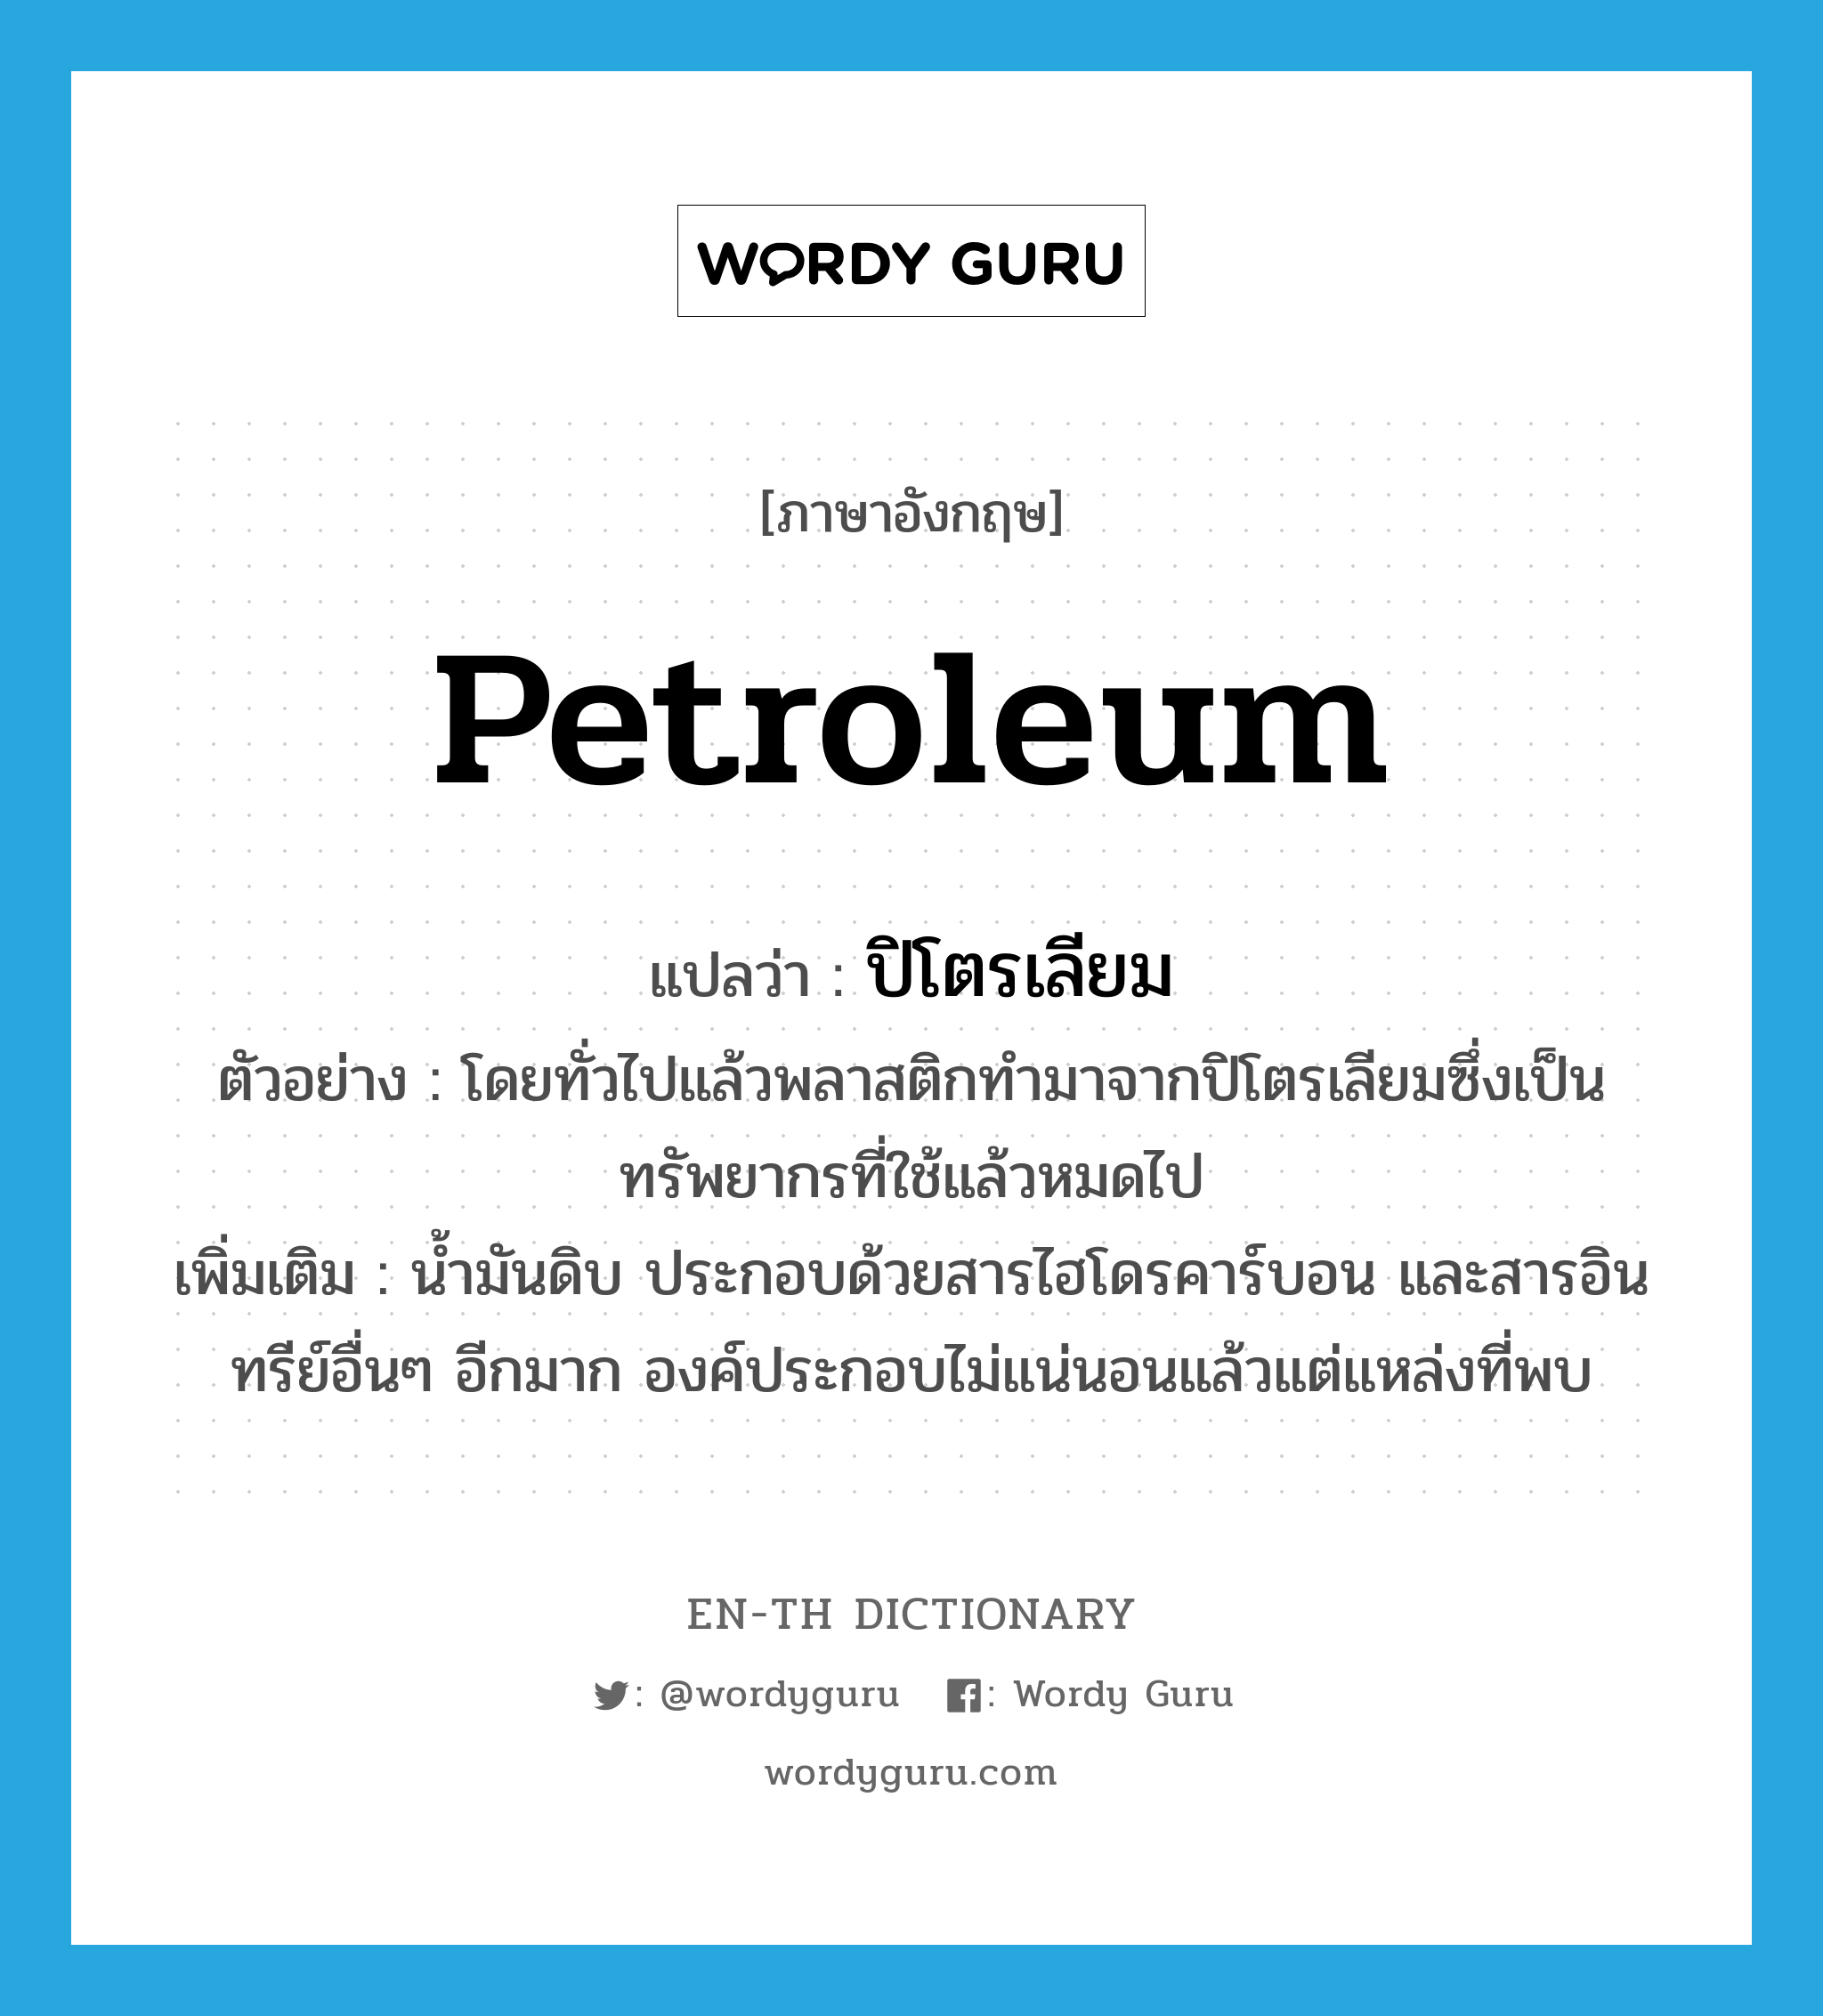 petroleum แปลว่า?, คำศัพท์ภาษาอังกฤษ petroleum แปลว่า ปิโตรเลียม ประเภท N ตัวอย่าง โดยทั่วไปแล้วพลาสติกทำมาจากปิโตรเลียมซึ่งเป็นทรัพยากรที่ใช้แล้วหมดไป เพิ่มเติม น้ำมันดิบ ประกอบด้วยสารไฮโดรคาร์บอน และสารอินทรีย์อื่นๆ อีกมาก องค์ประกอบไม่แน่นอนแล้วแต่แหล่งที่พบ หมวด N